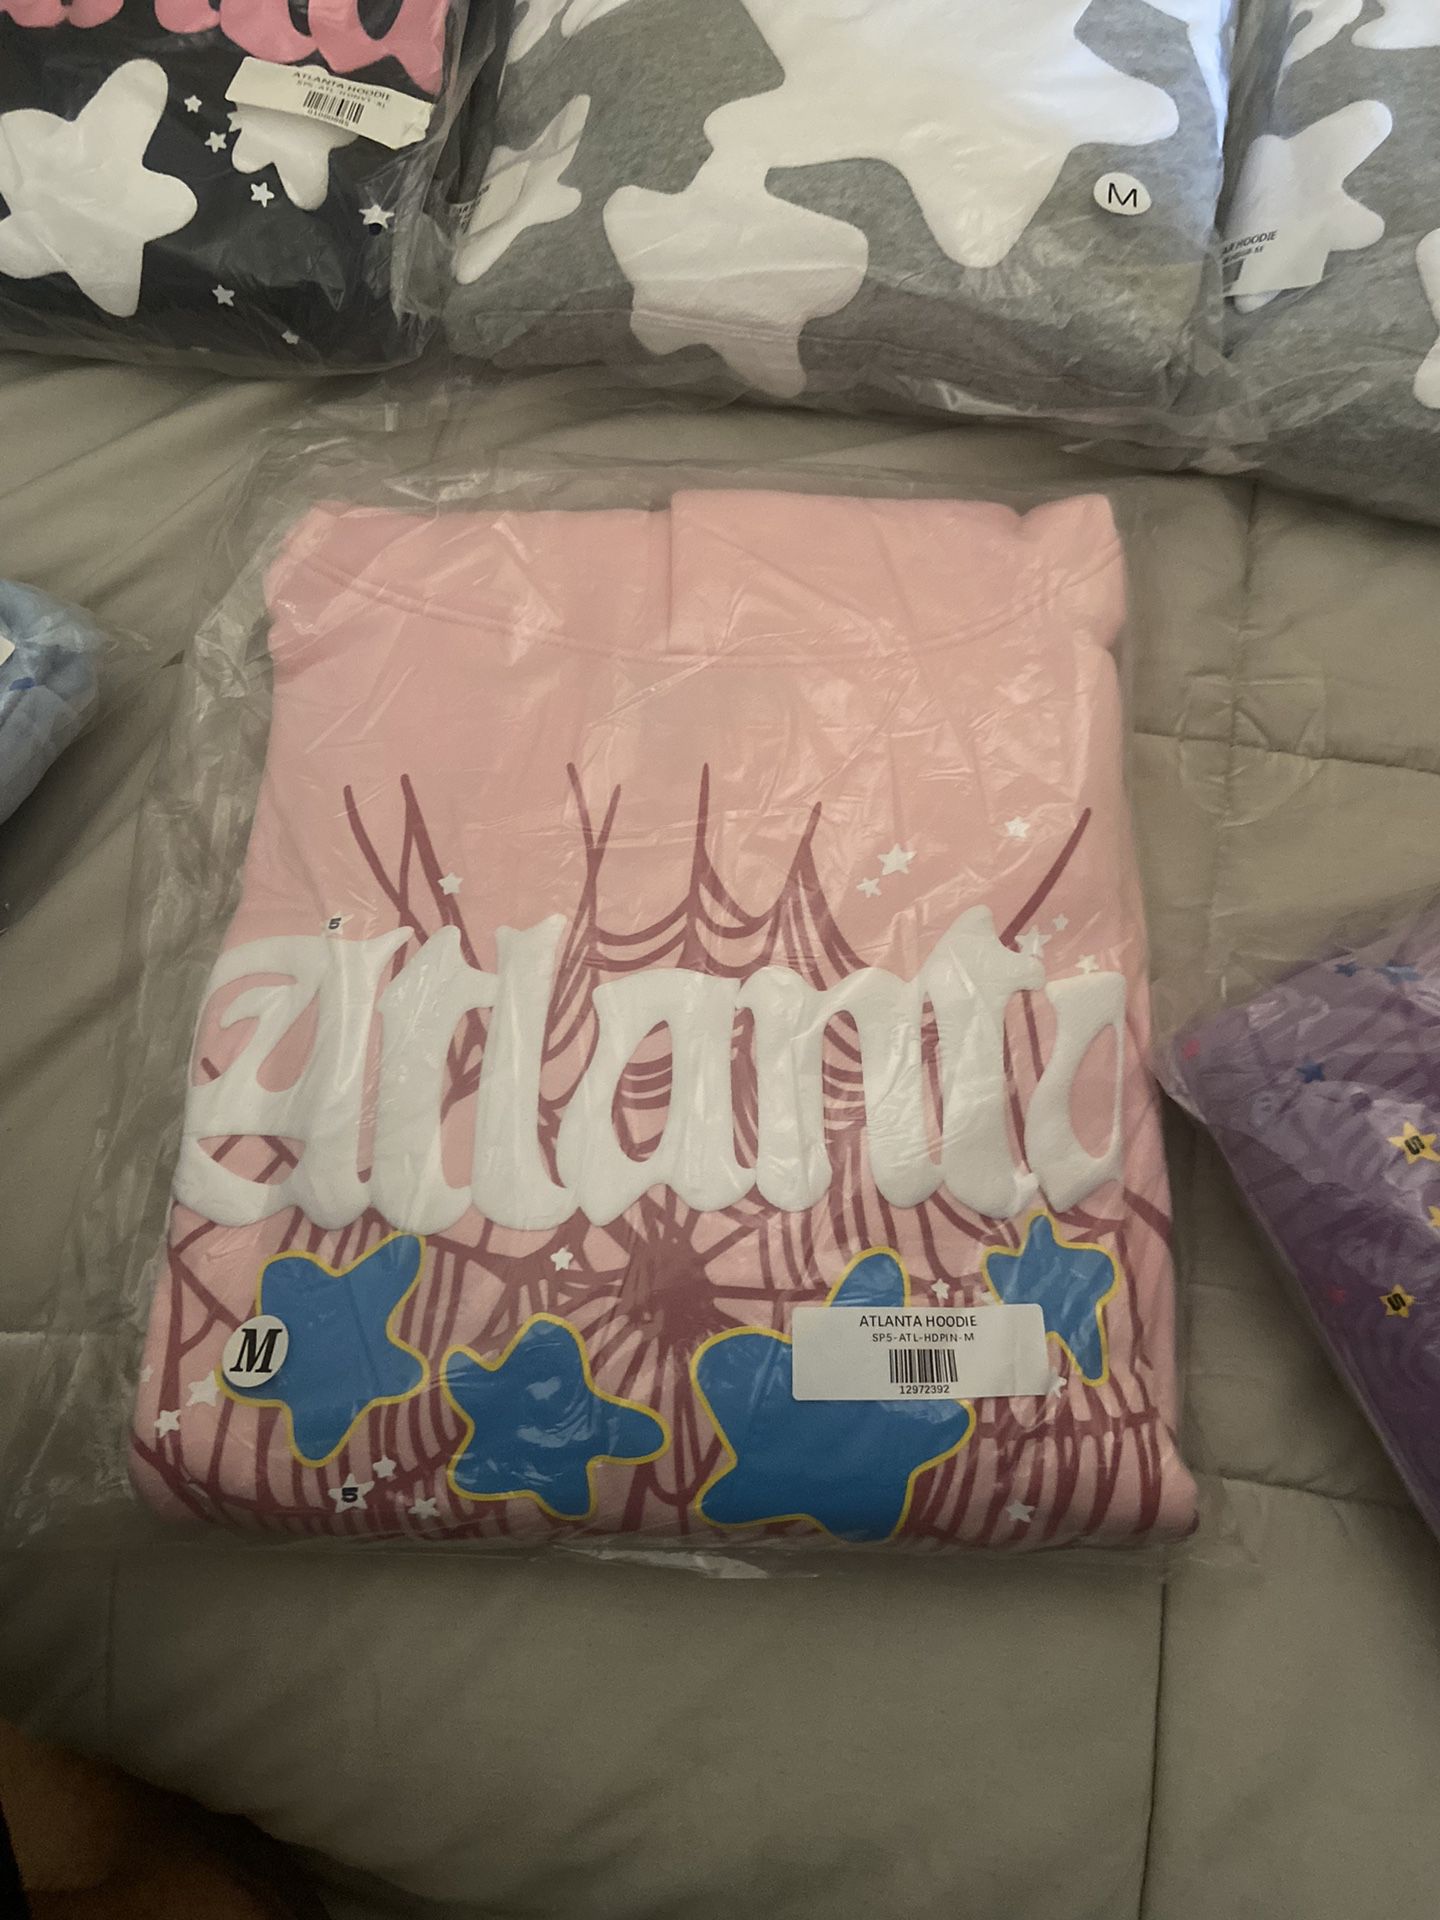 Sp5der Pink Atlanta hoodie